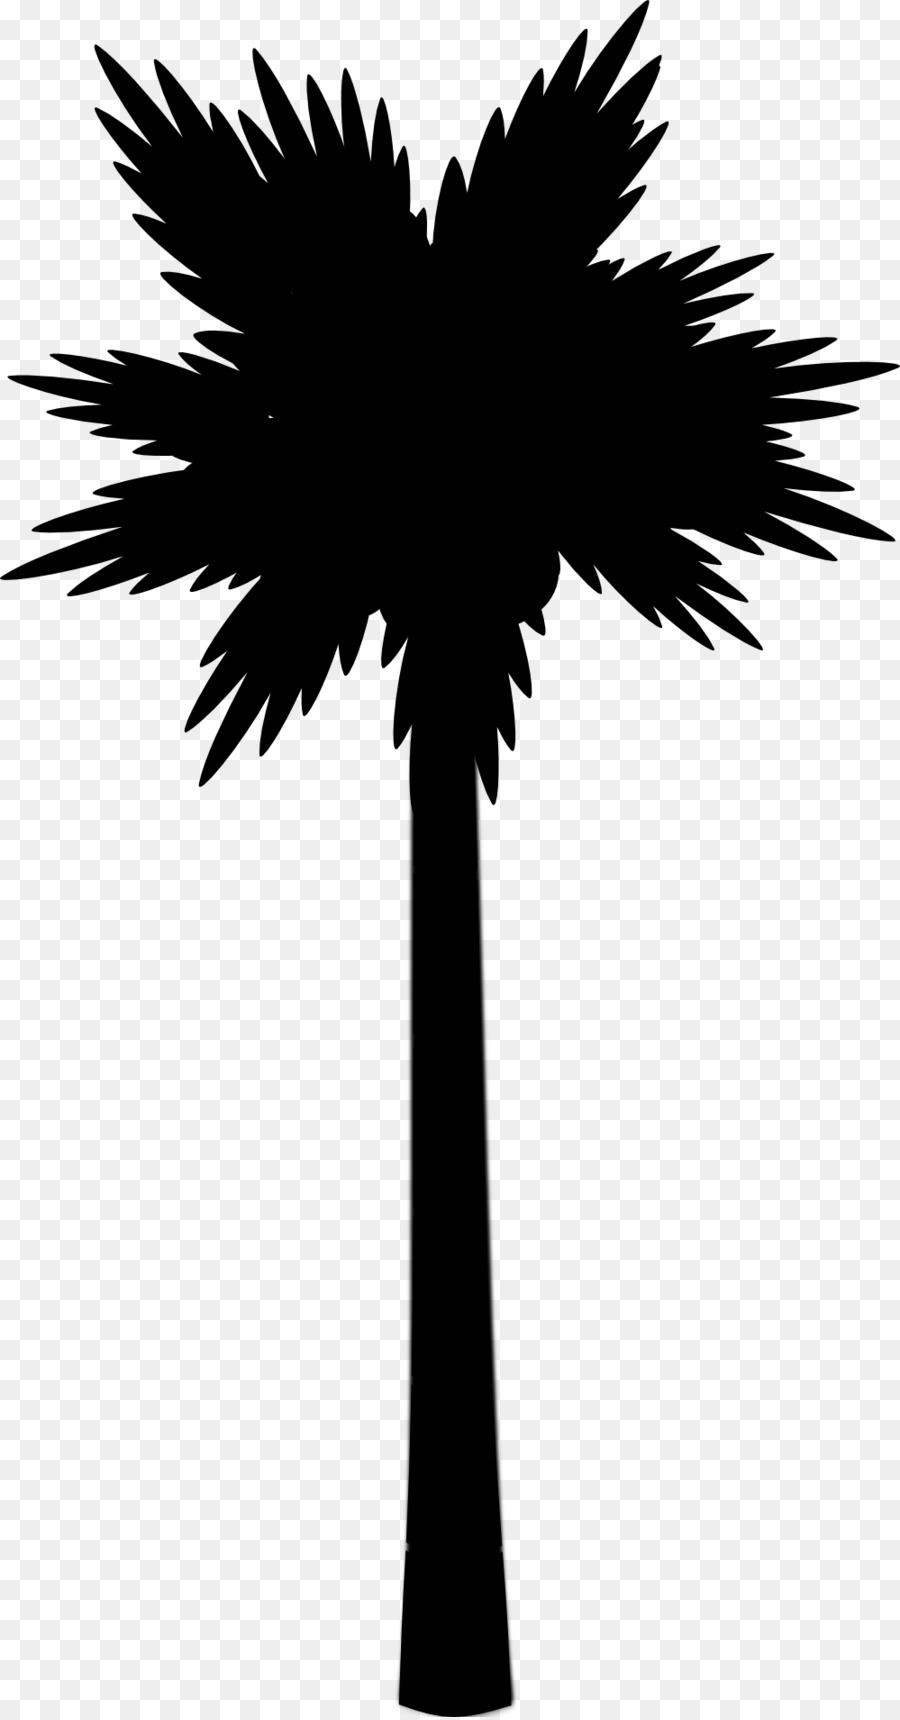 Asiatico palmyra palm Icone di Computer Immagini di Grafica Vettoriale Scalabile Spiaggia - 